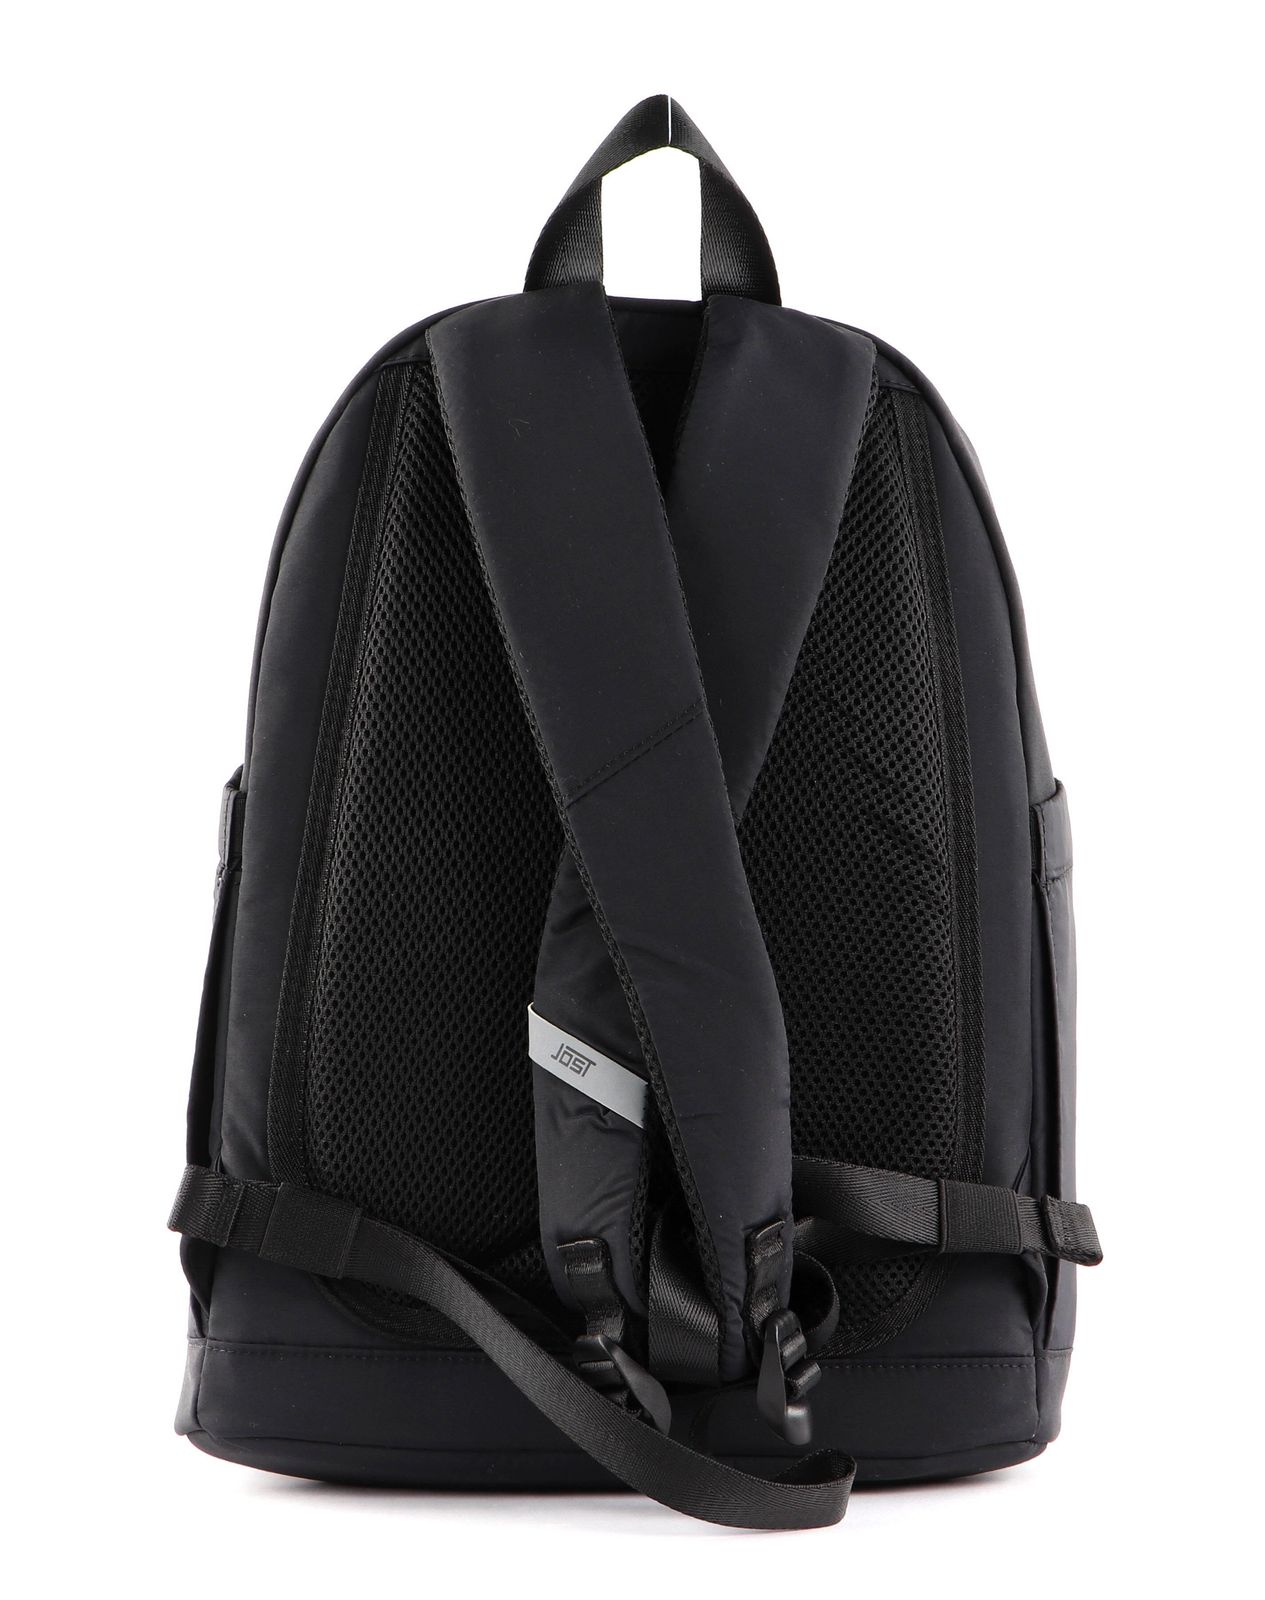 JOST leisure backpack Lohja Daypack Backpack Black | Buy bags, purses ...